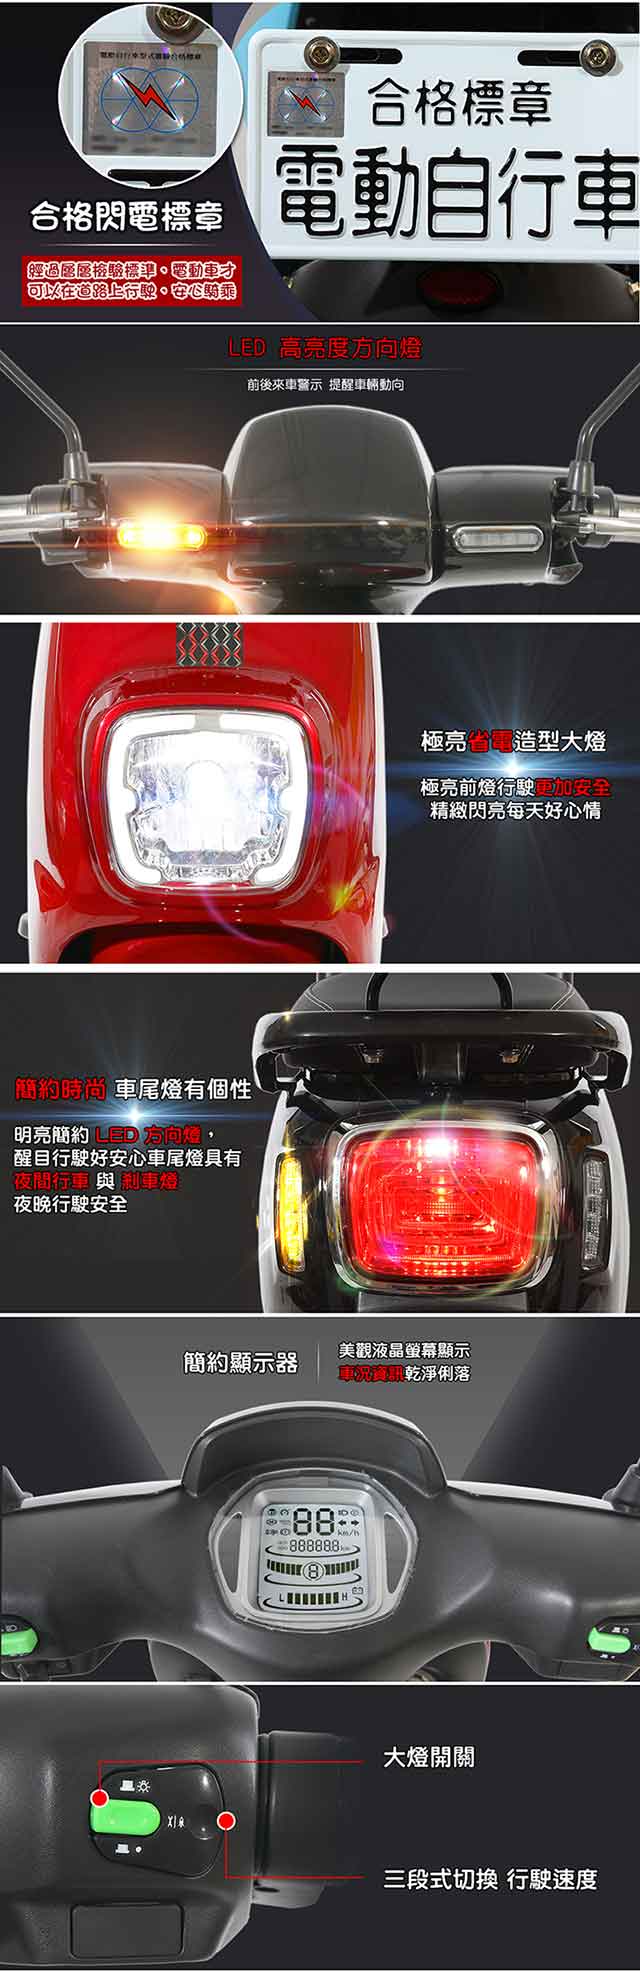 【e路通】EA-R59A+ 酷樂 48V鋰鐵 500W LED大燈 冷光儀表 電動車